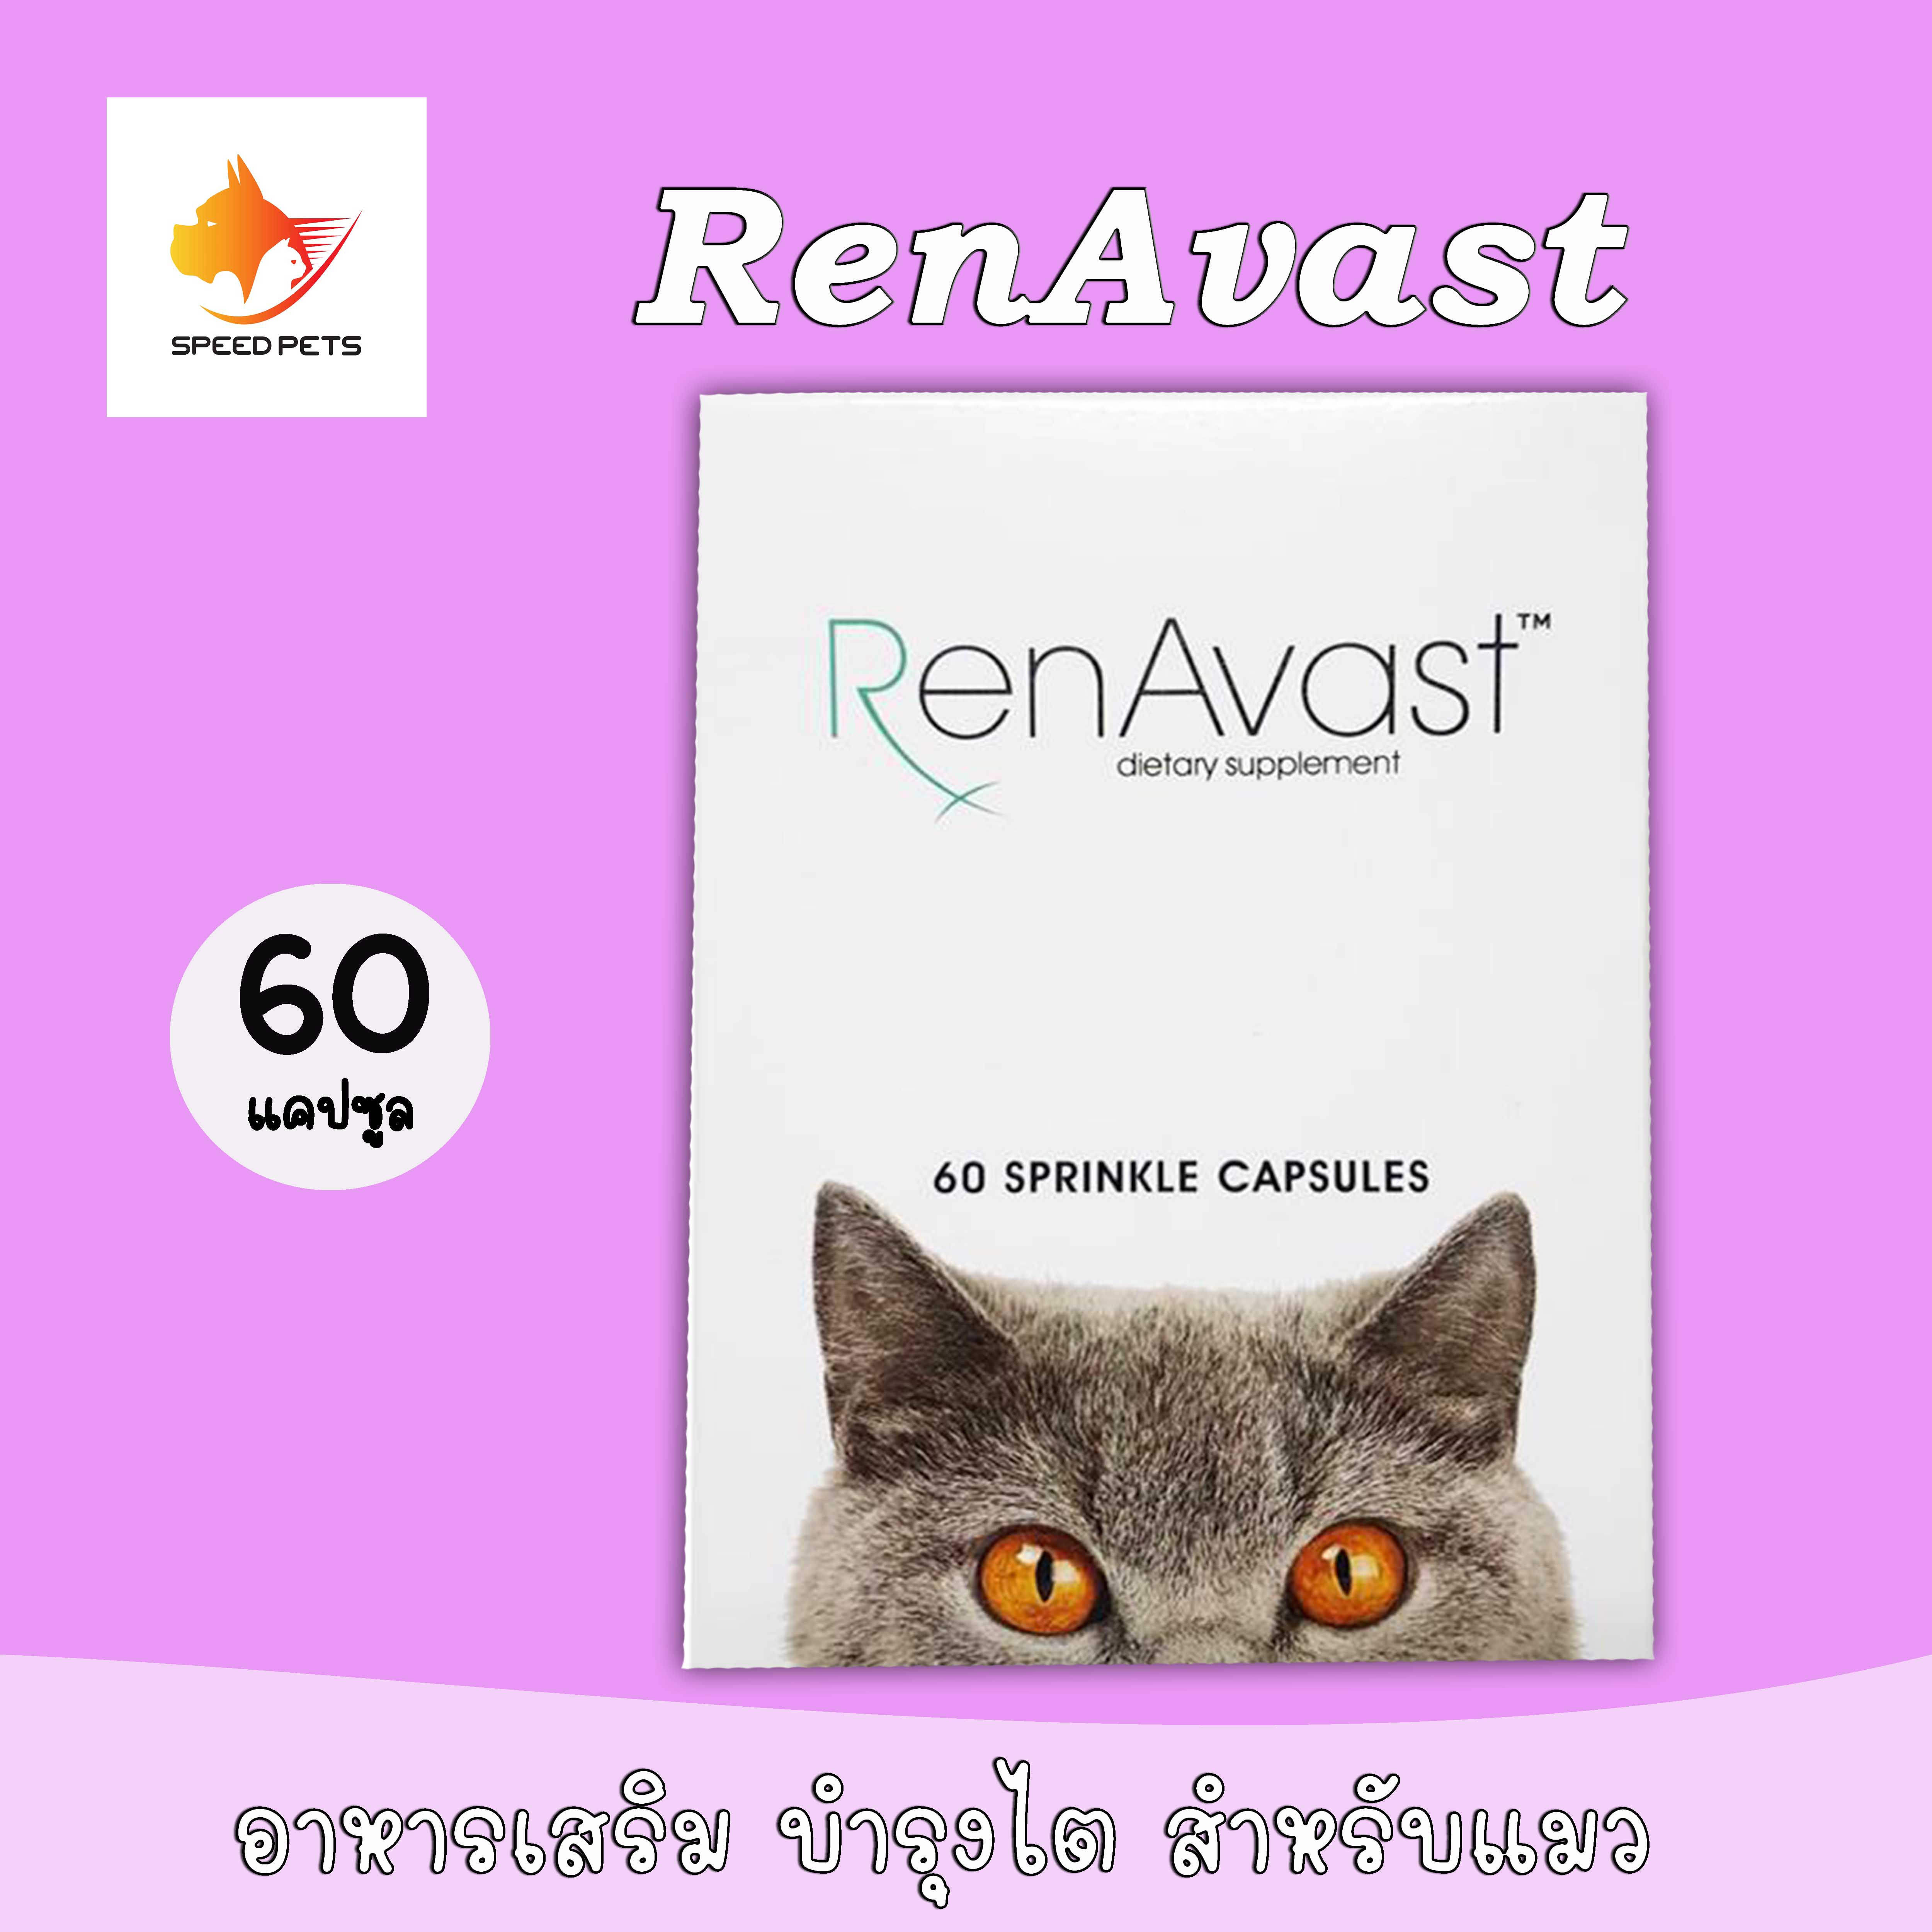 RenAvast CAT (60 แคปซูล) อาหารเสริม บำรุงไตแมว แมวป่วยโรคไต ไตเสื่อม ค่าไตขึ้น บำรุงระดับเซลล์  60 แคปซูล